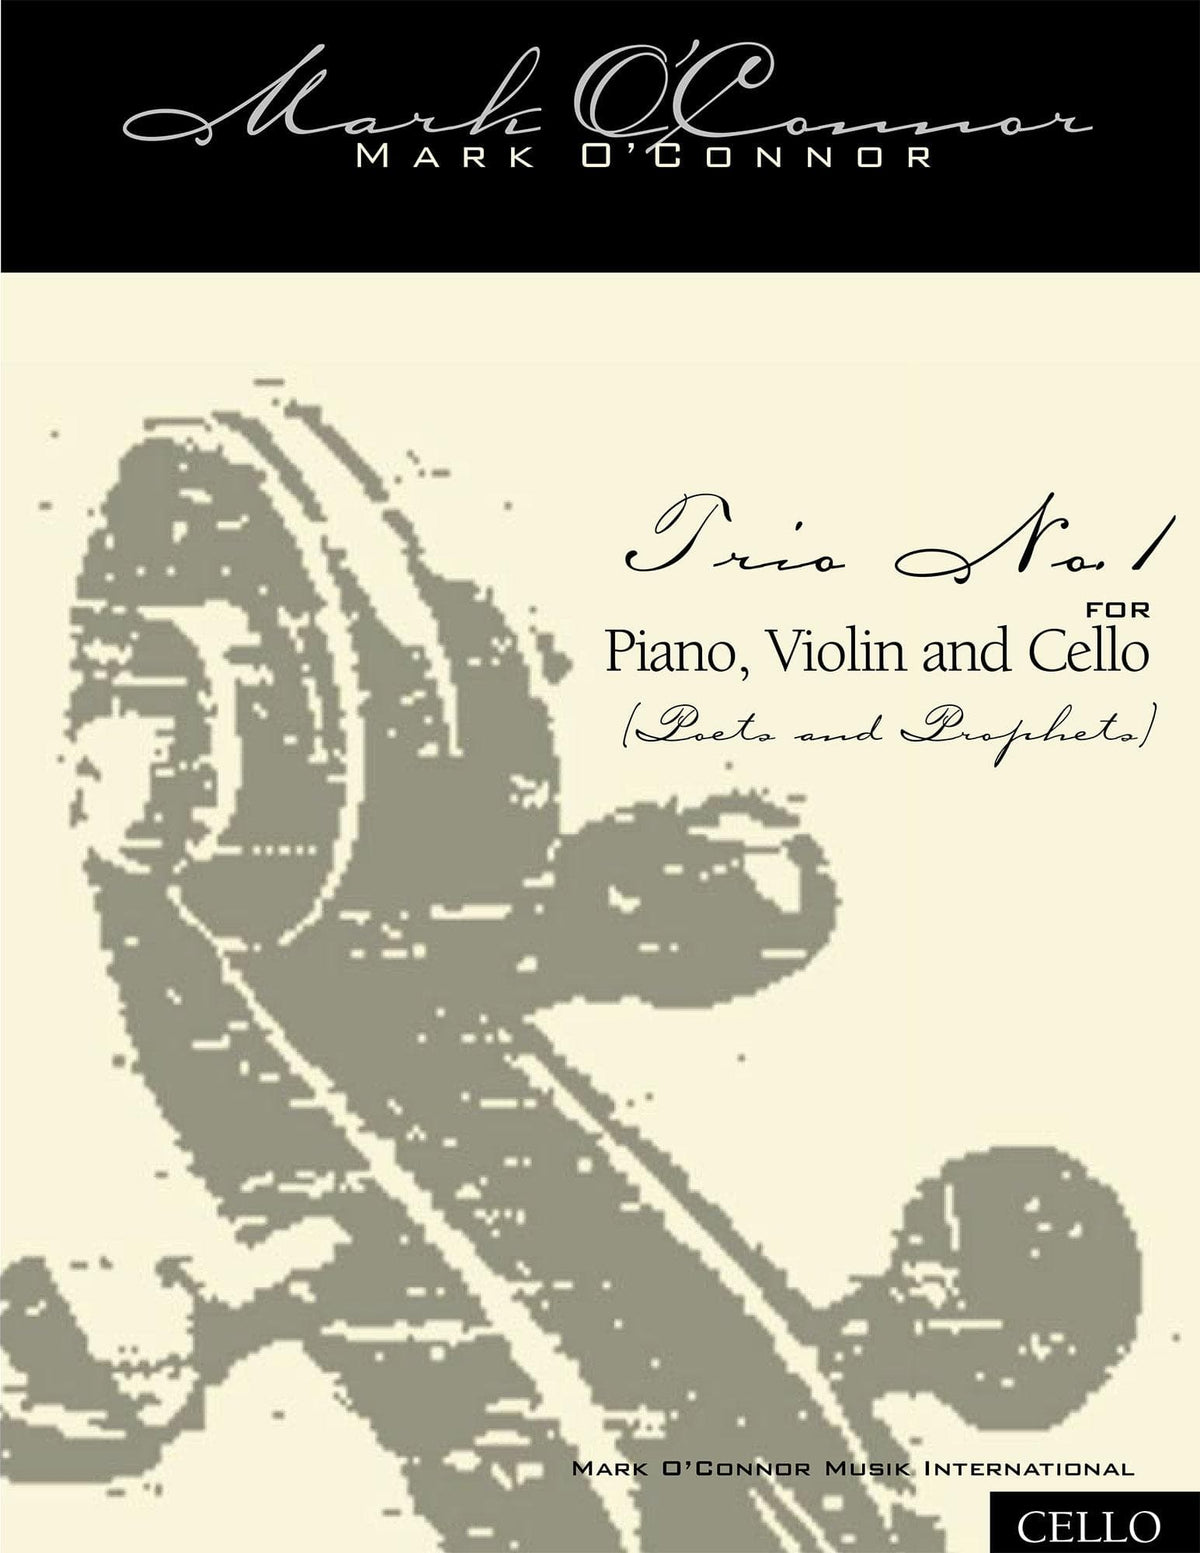 O'Connor, Mark - Trio No. 1 (Poets and Prophets) for Piano, Violin and Cello - Cello - Digital Download